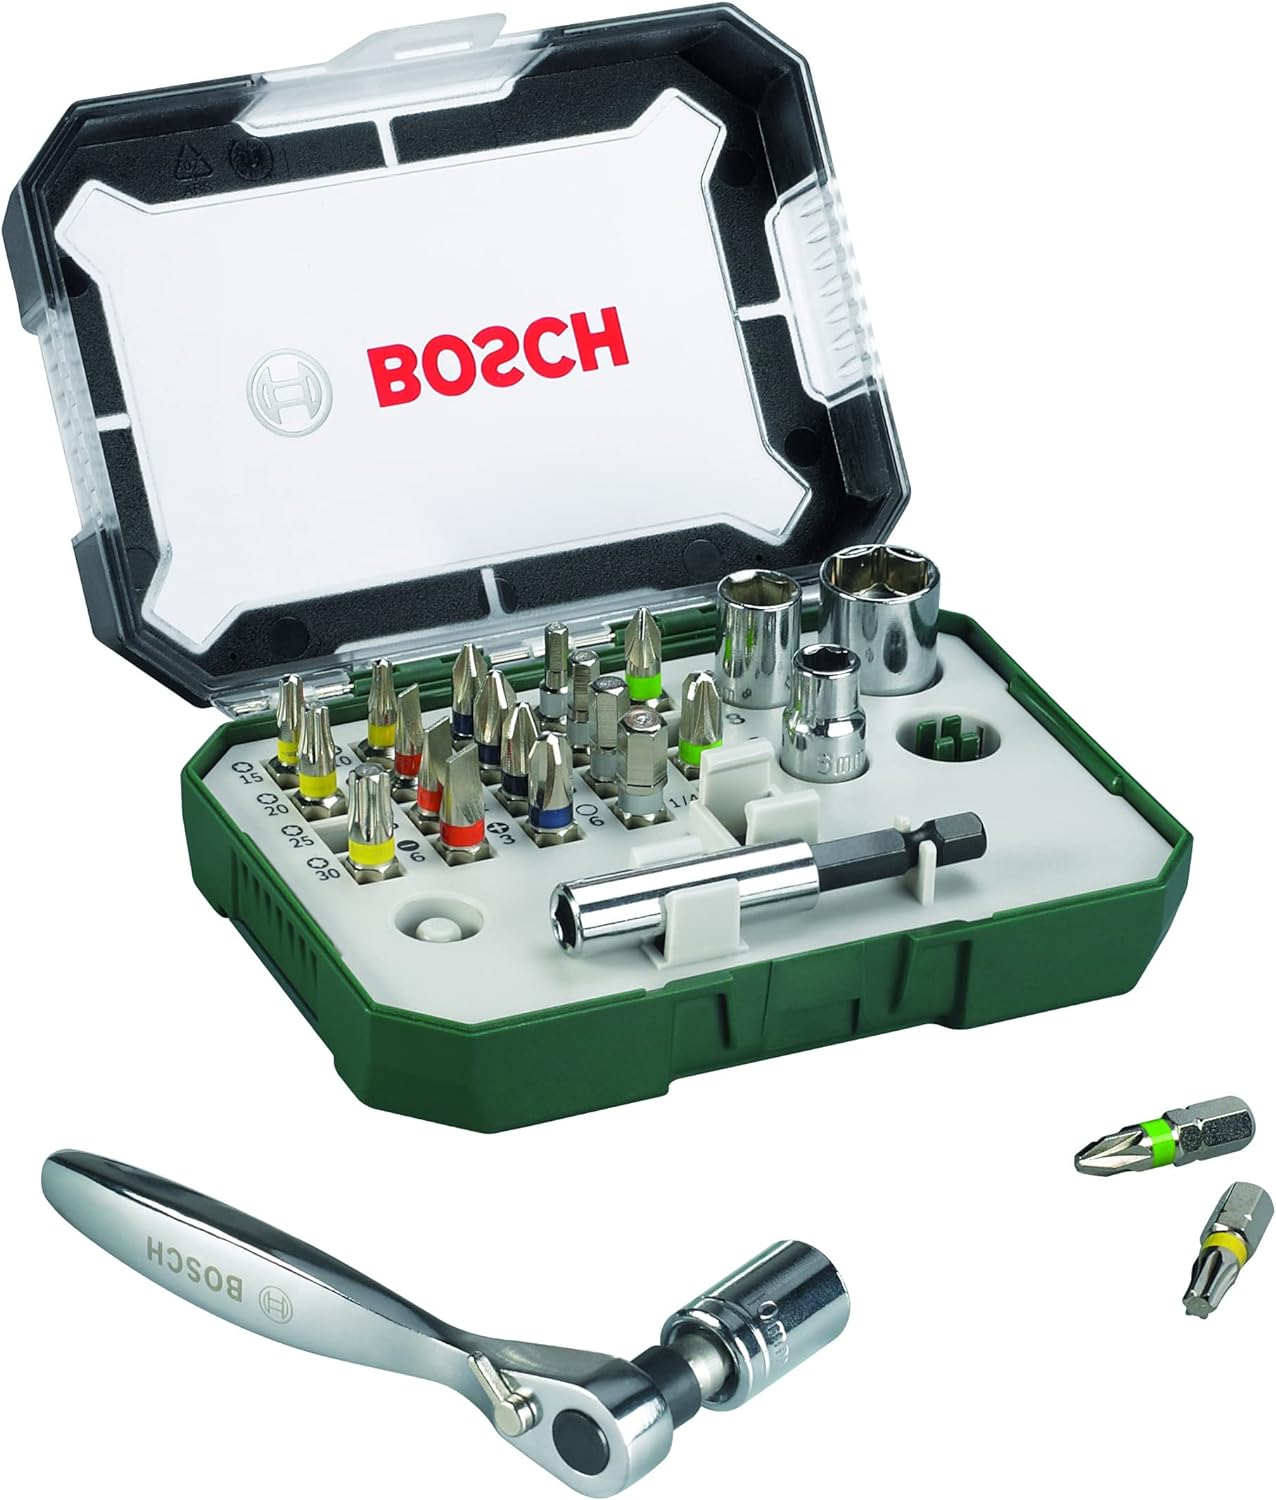 Bosch 26pc. Screwdriver Bit and Ratchet Set-8207 Info